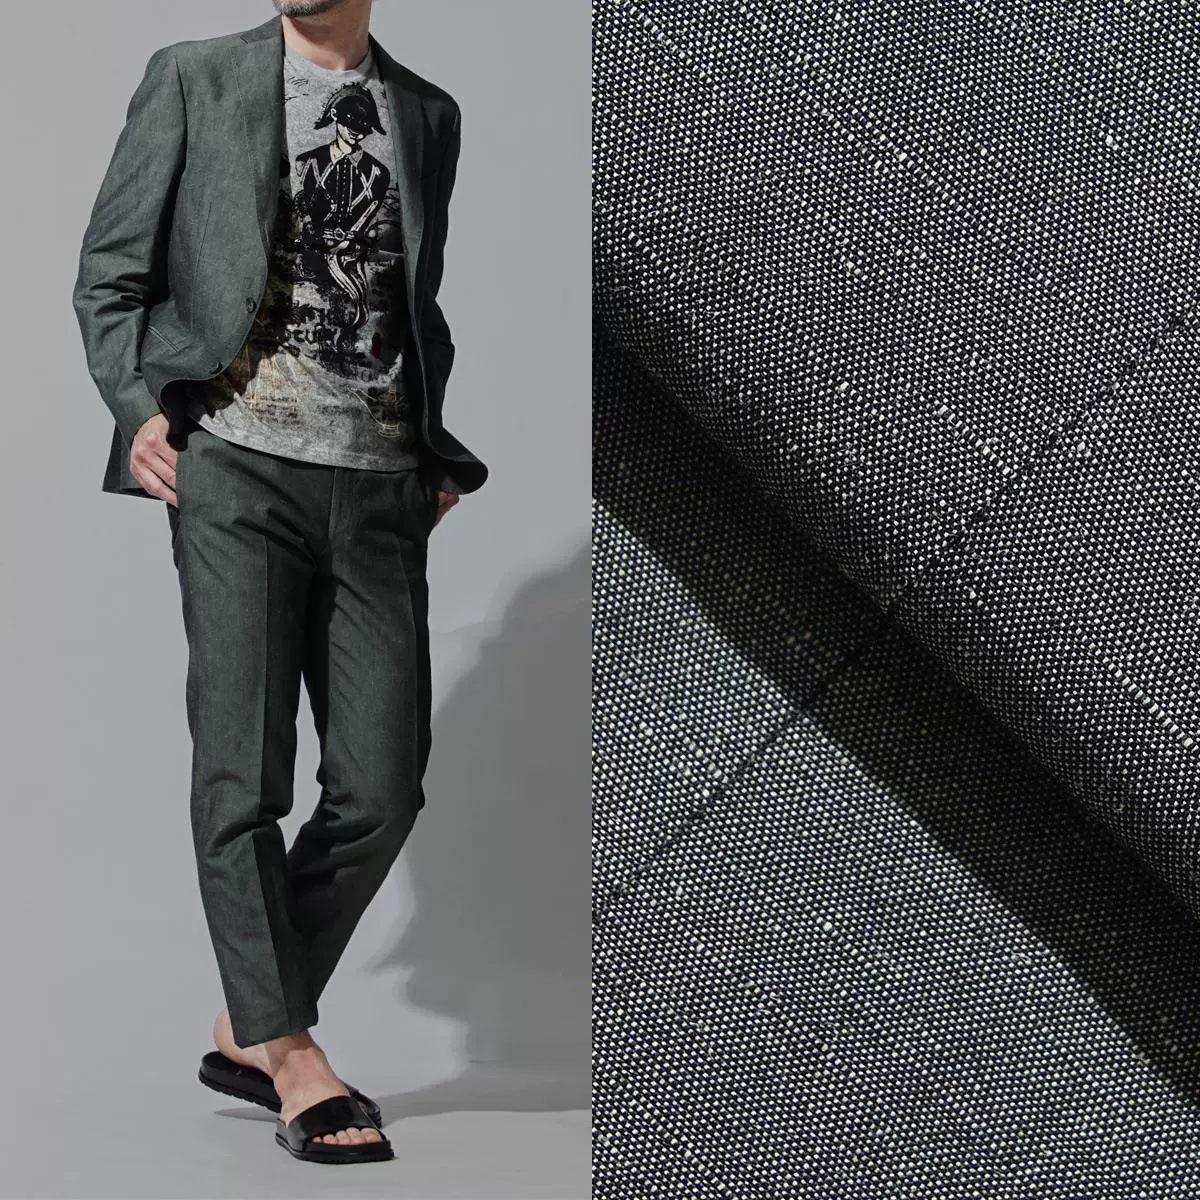 Dịch vụ mua sắm Nhật Bản Ý THE GIGI 2018 bộ đồ công sở nam vải cotton và vải lanh A - Suit phù hợp